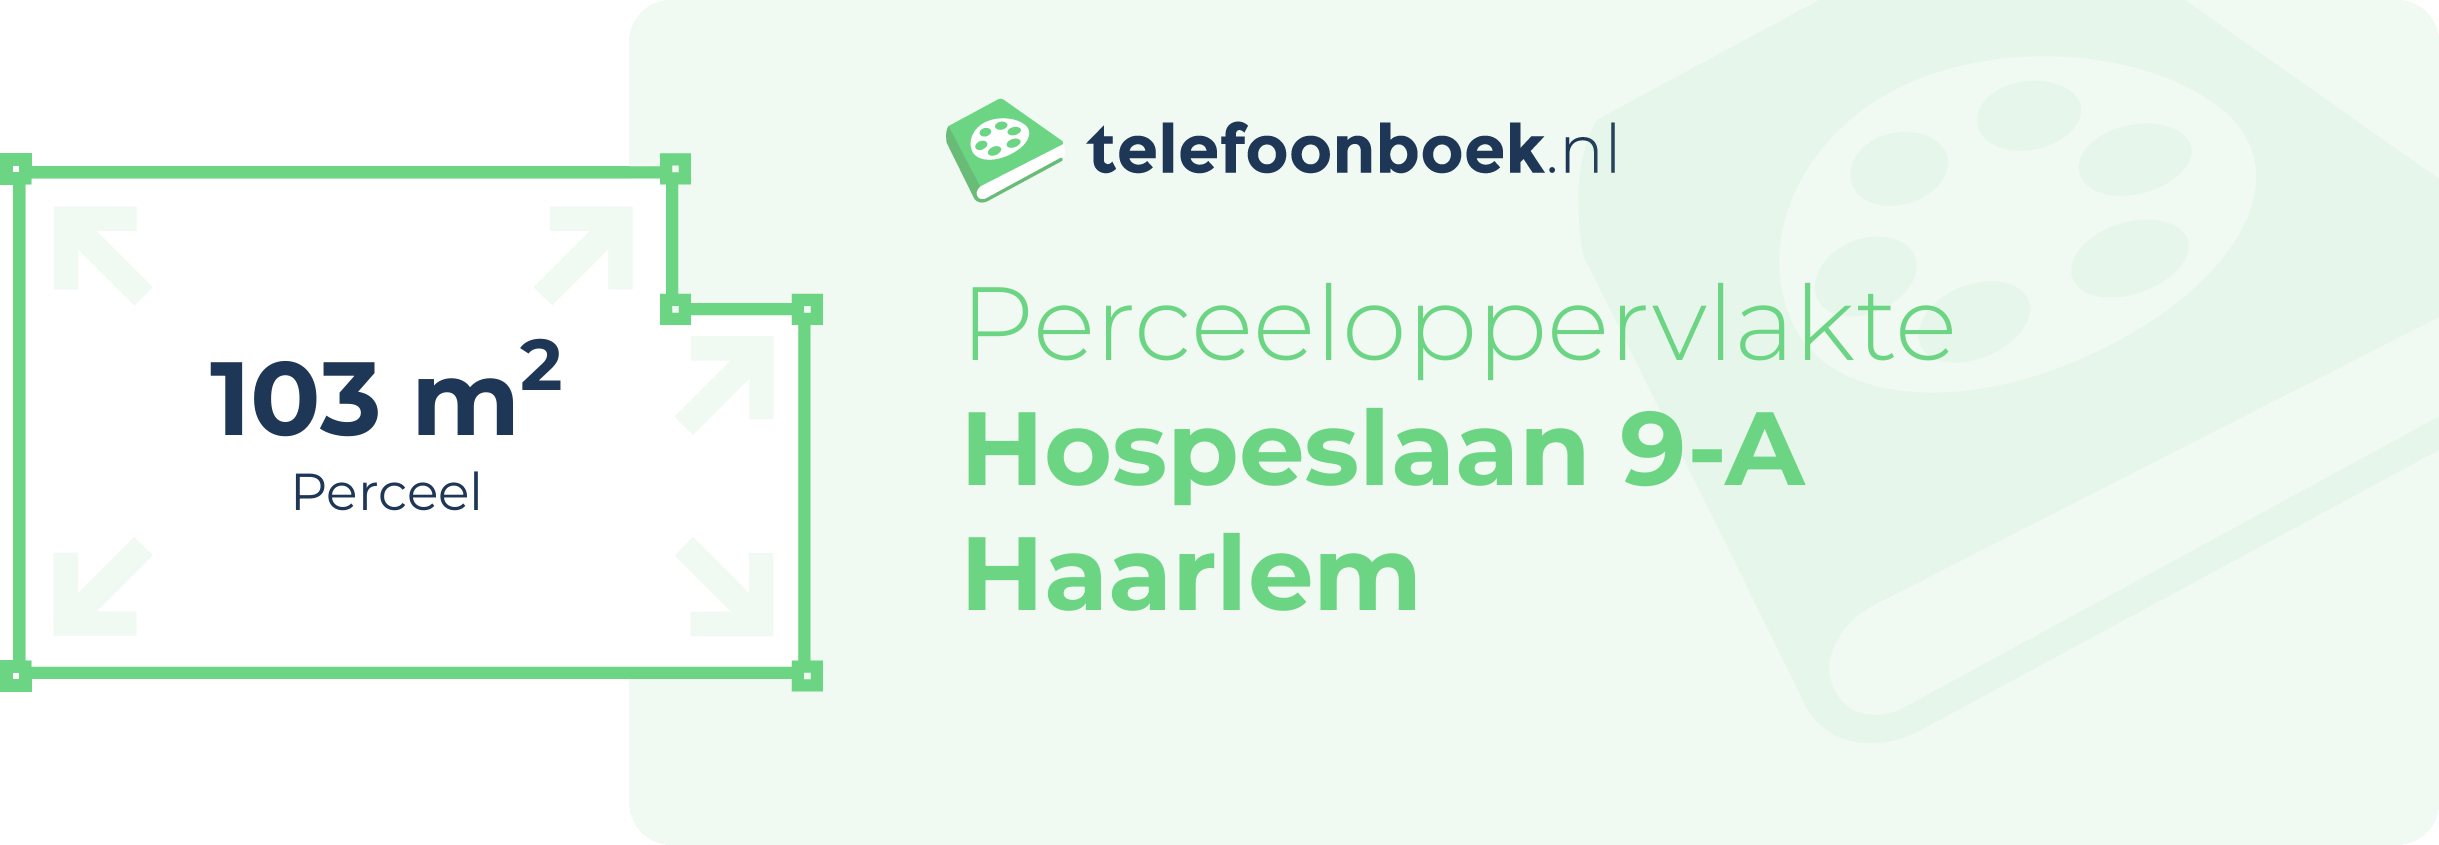 Perceeloppervlakte Hospeslaan 9-A Haarlem